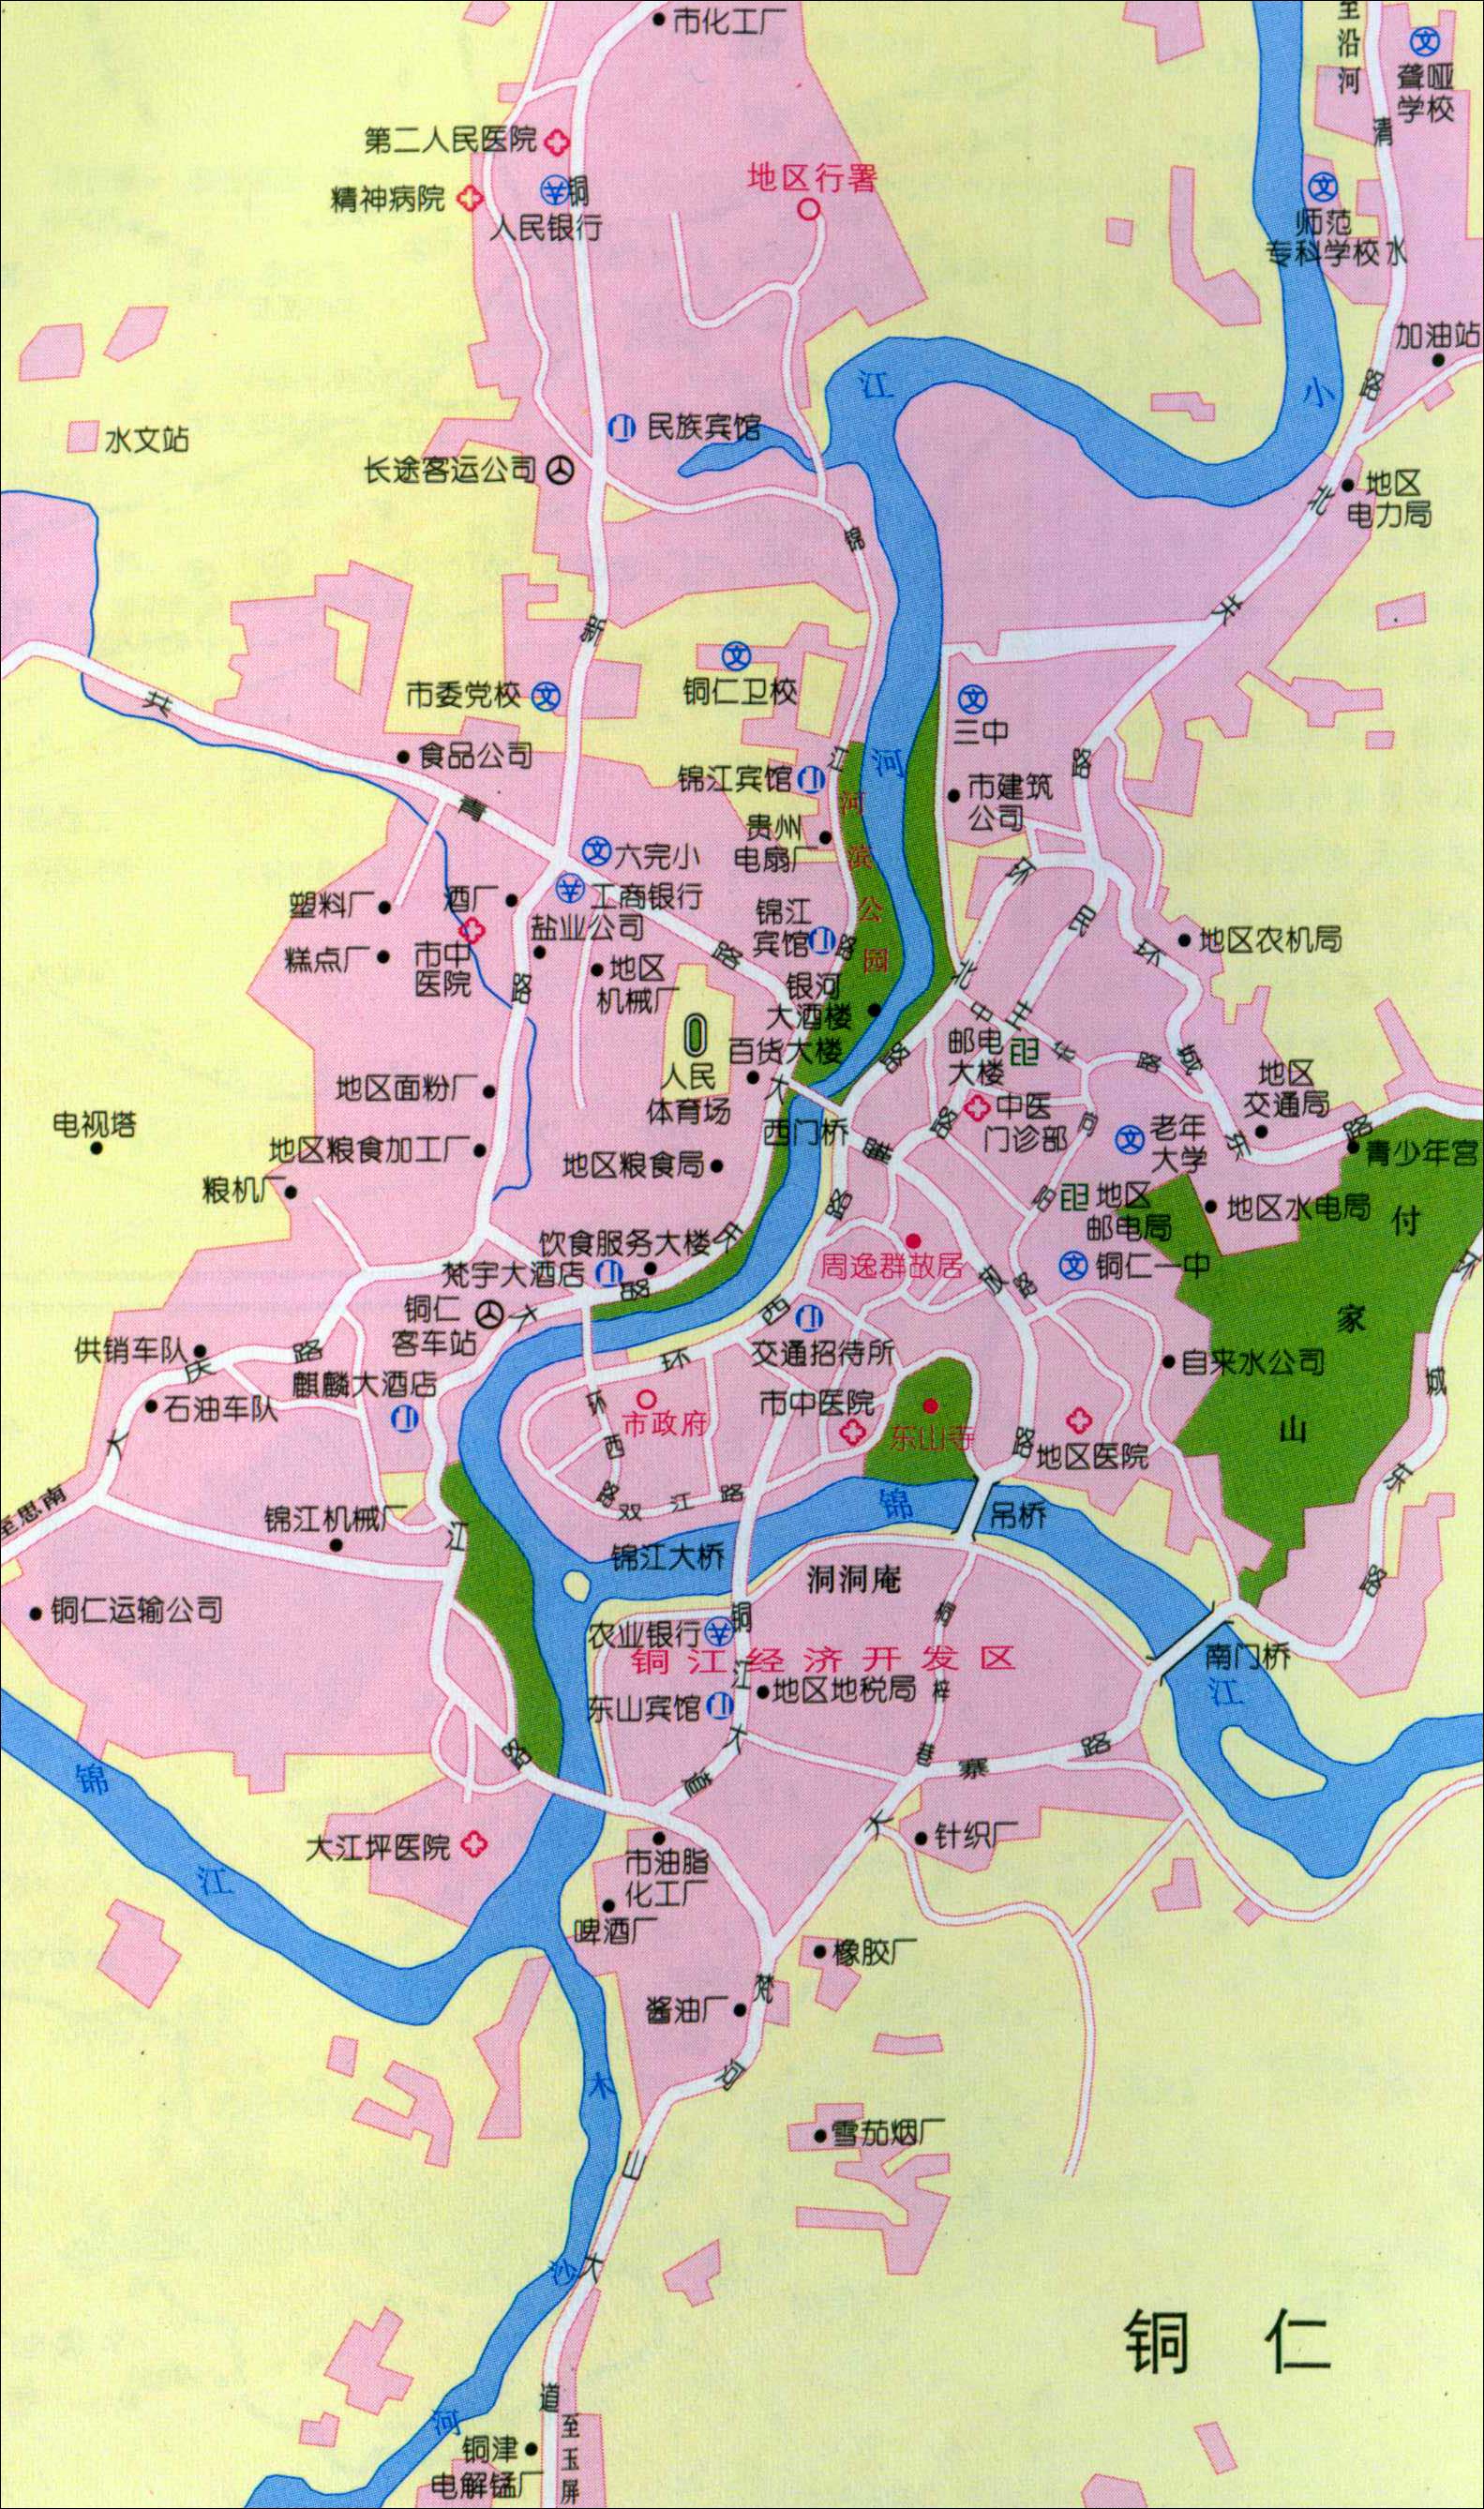 包含贵州省安顺市地图标注的词条